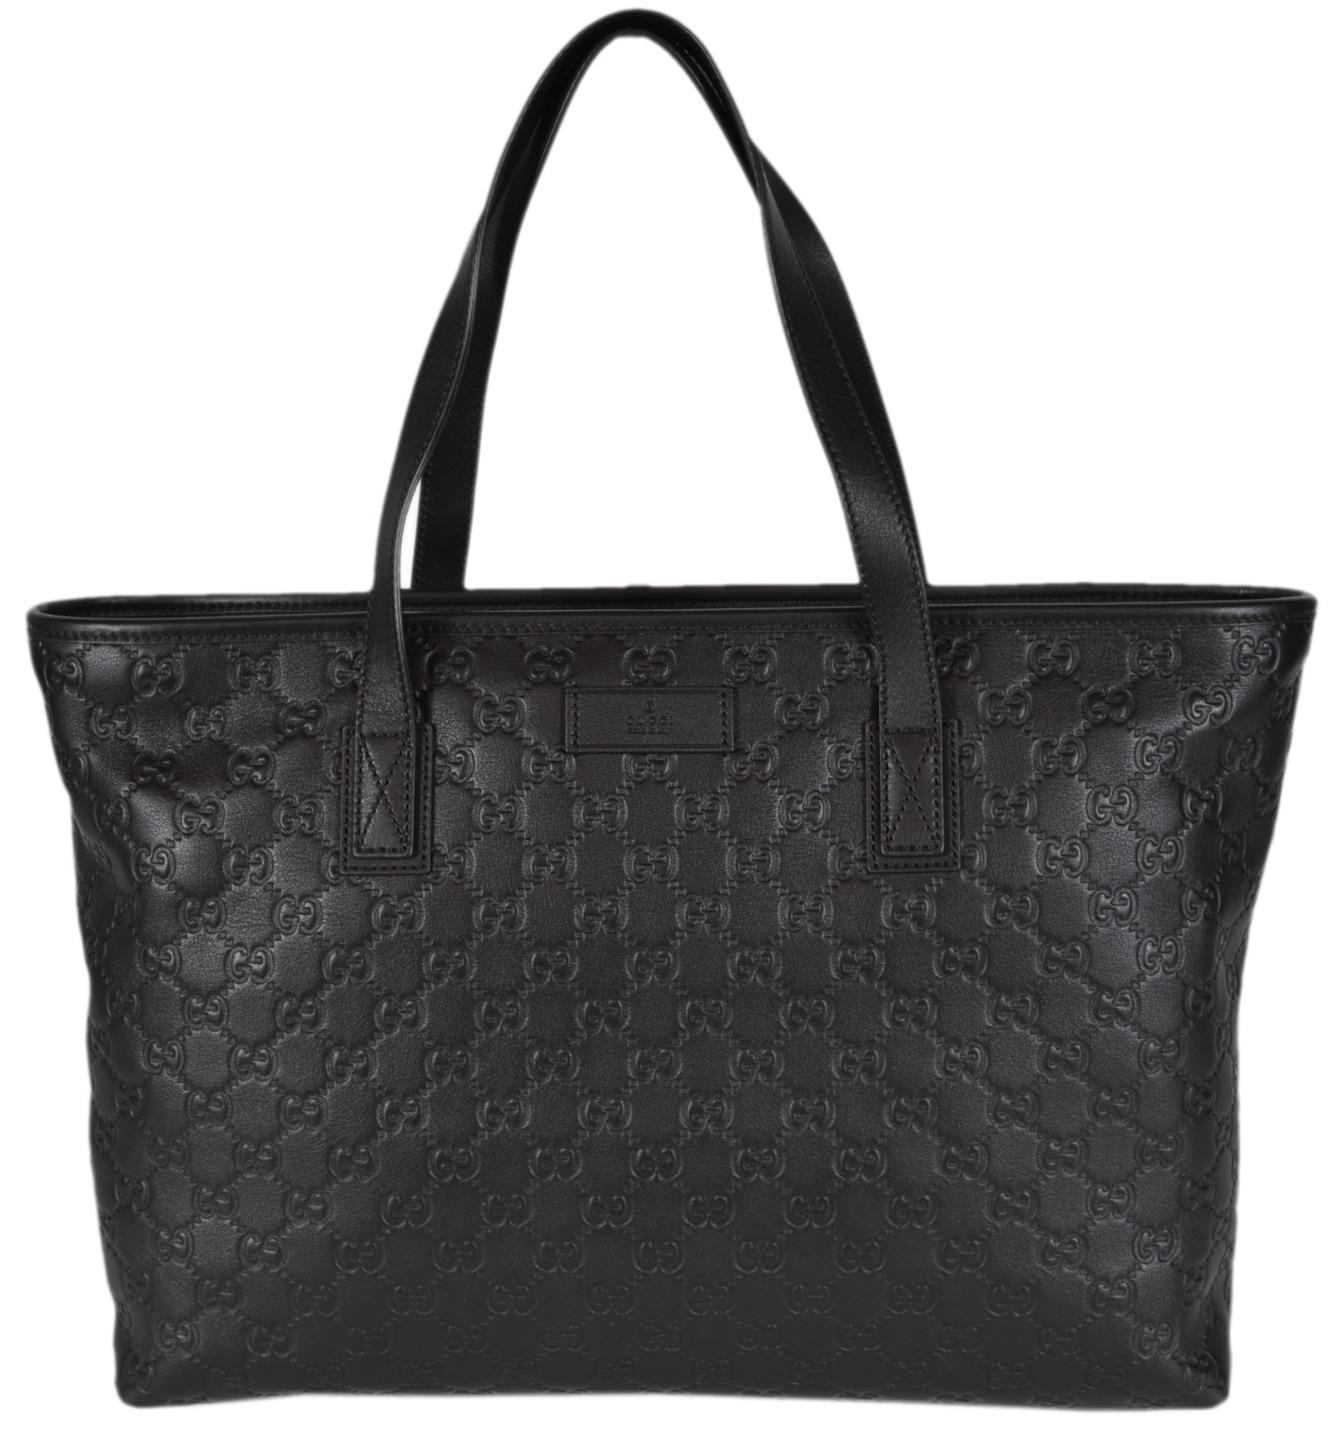 NEW Gucci 211137 Brown Leather GG Guccissima Zip Top Handbag Purse Tote ...